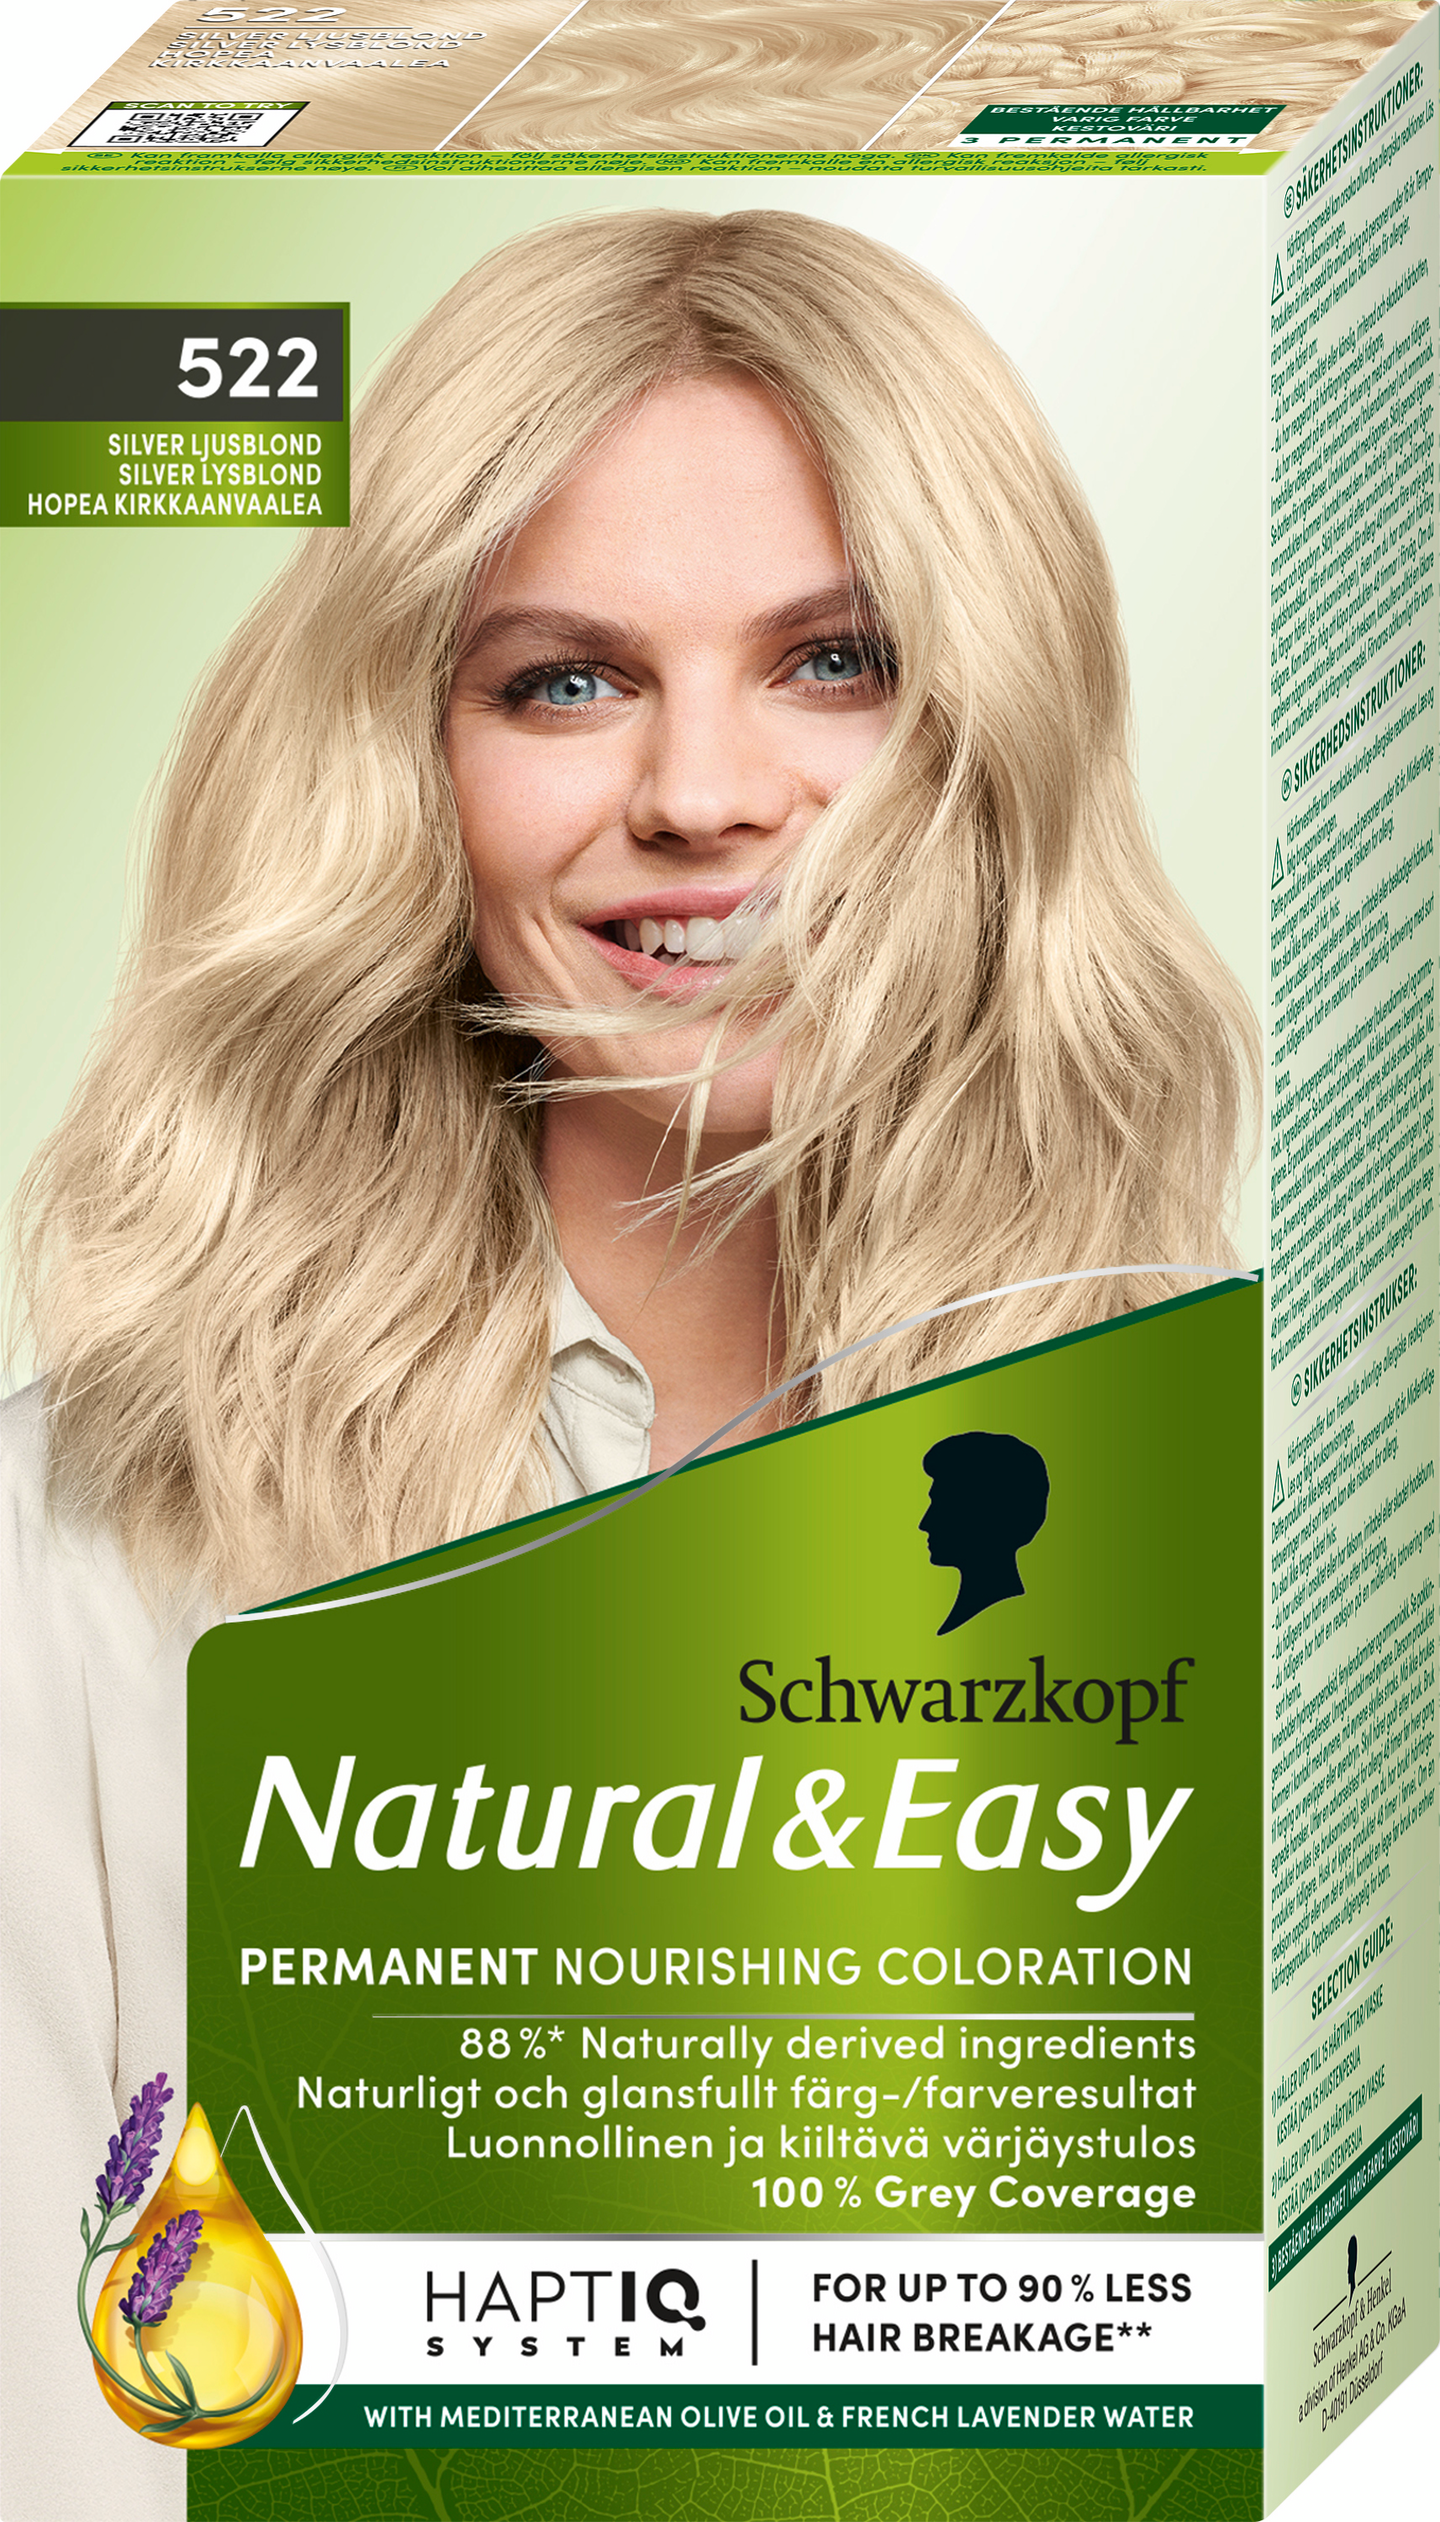 Schwarzkopf Natural & Easy hiusväri 522 Hopea Kirkkaanvaalea